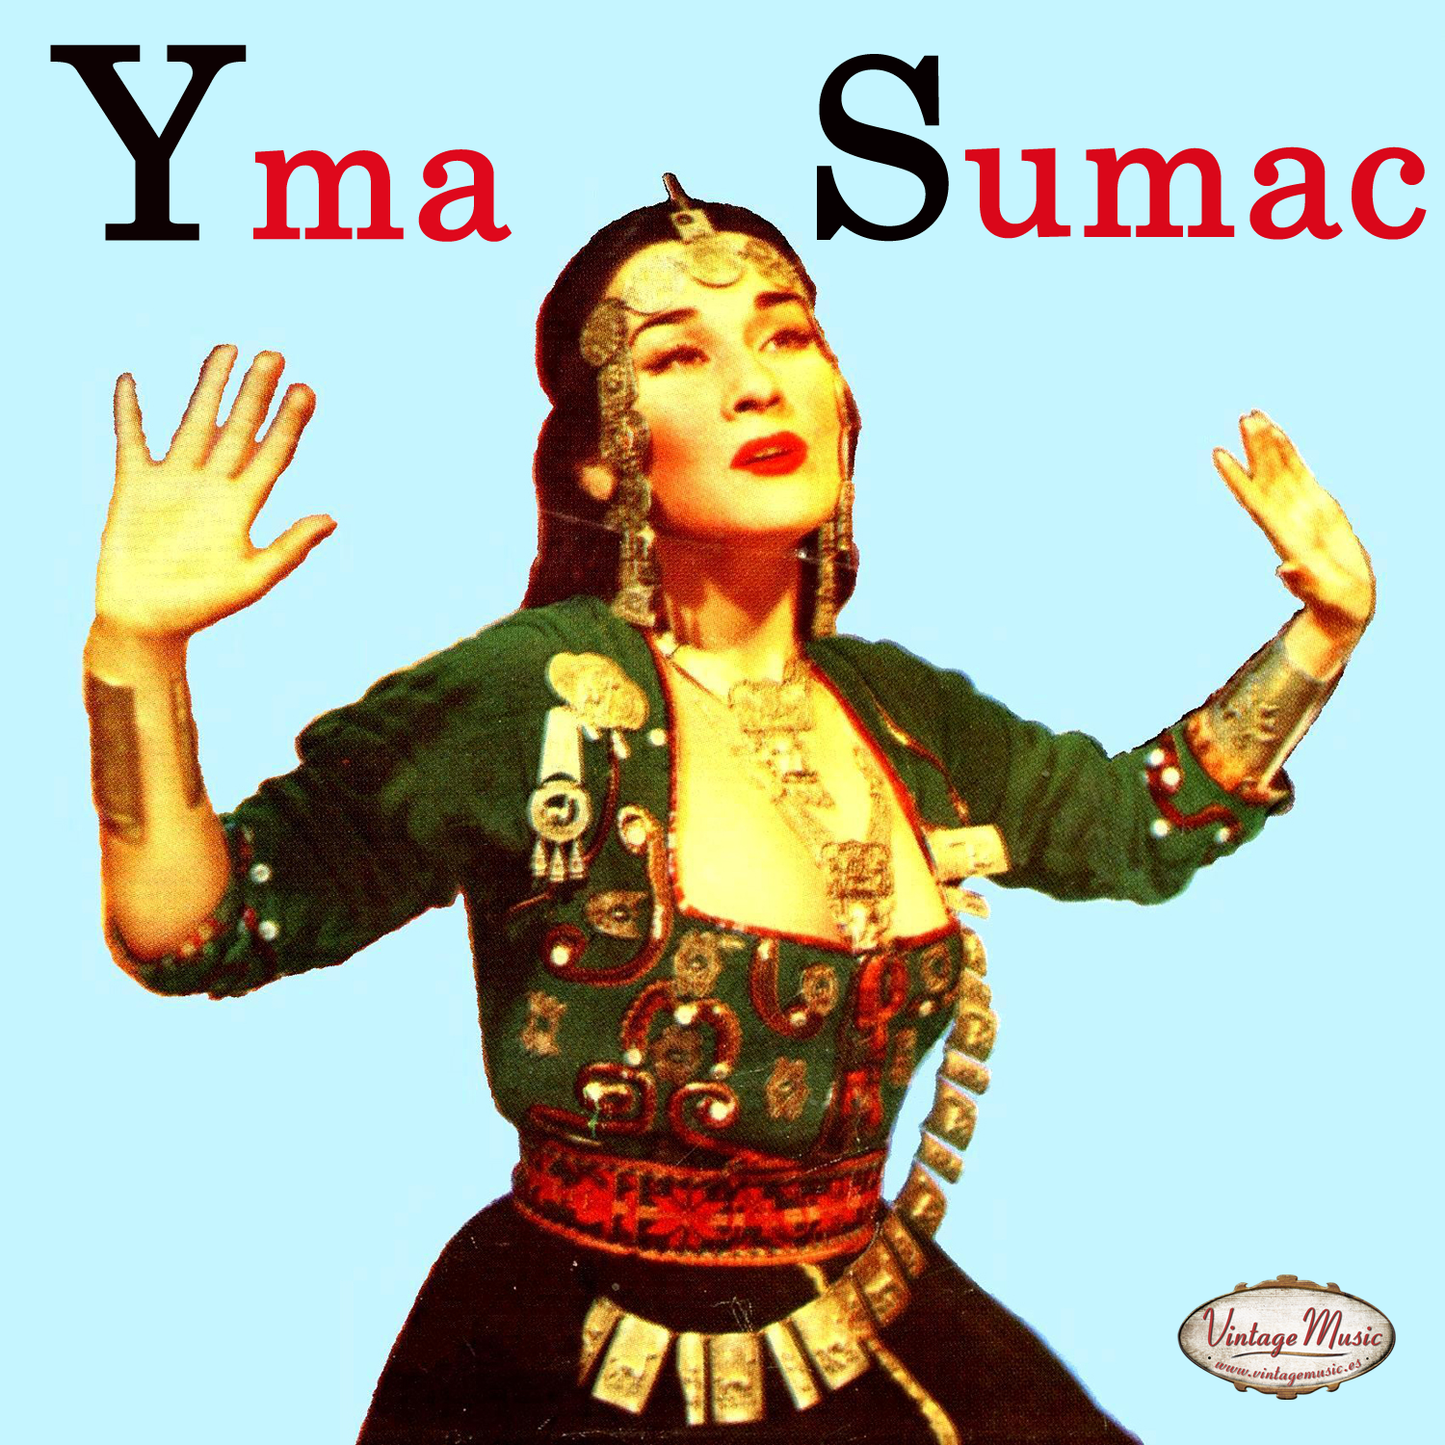 Yma Sumac (Colección Vintage Music)